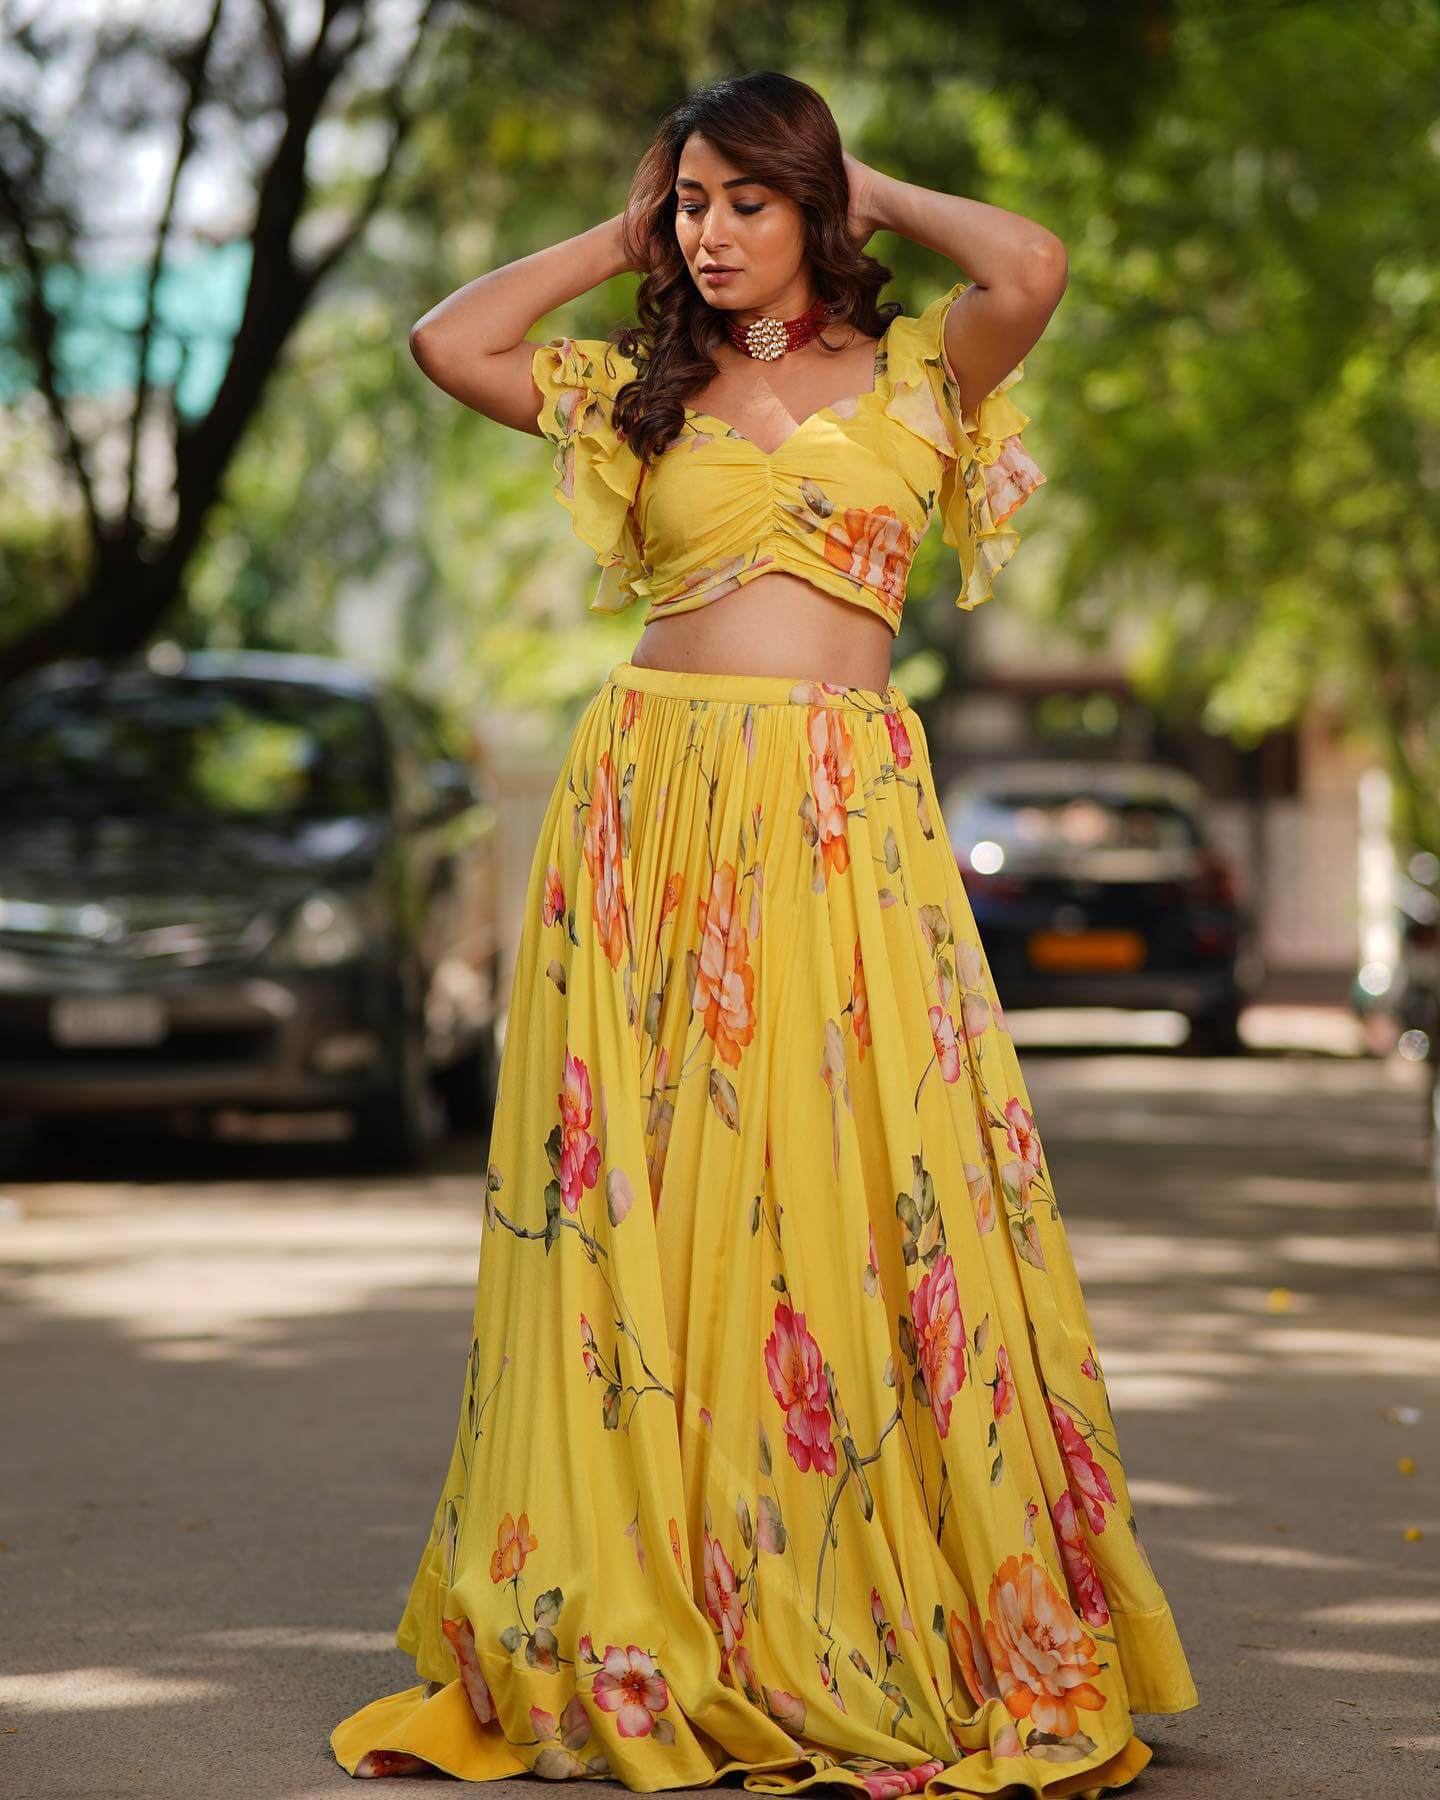 Punjabi Kudi Bhanu Sri Mehra  In Yellow Floral Printed Co-Ord Set - Lehenga & Saree Inspired Looks 